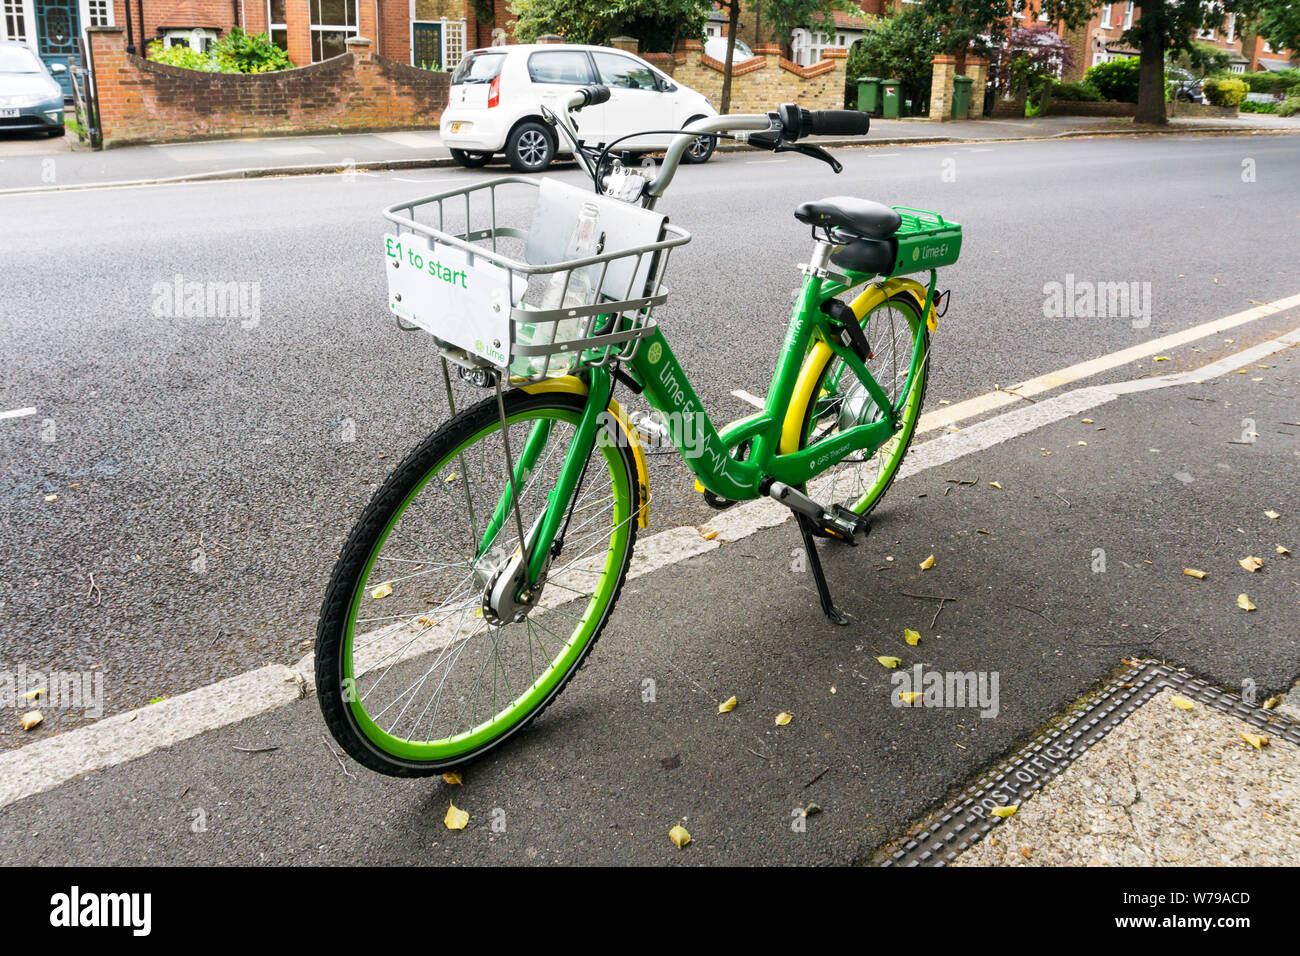 Ein Kalk - E-bike in einem Vorort Straße geparkt. Stockfoto